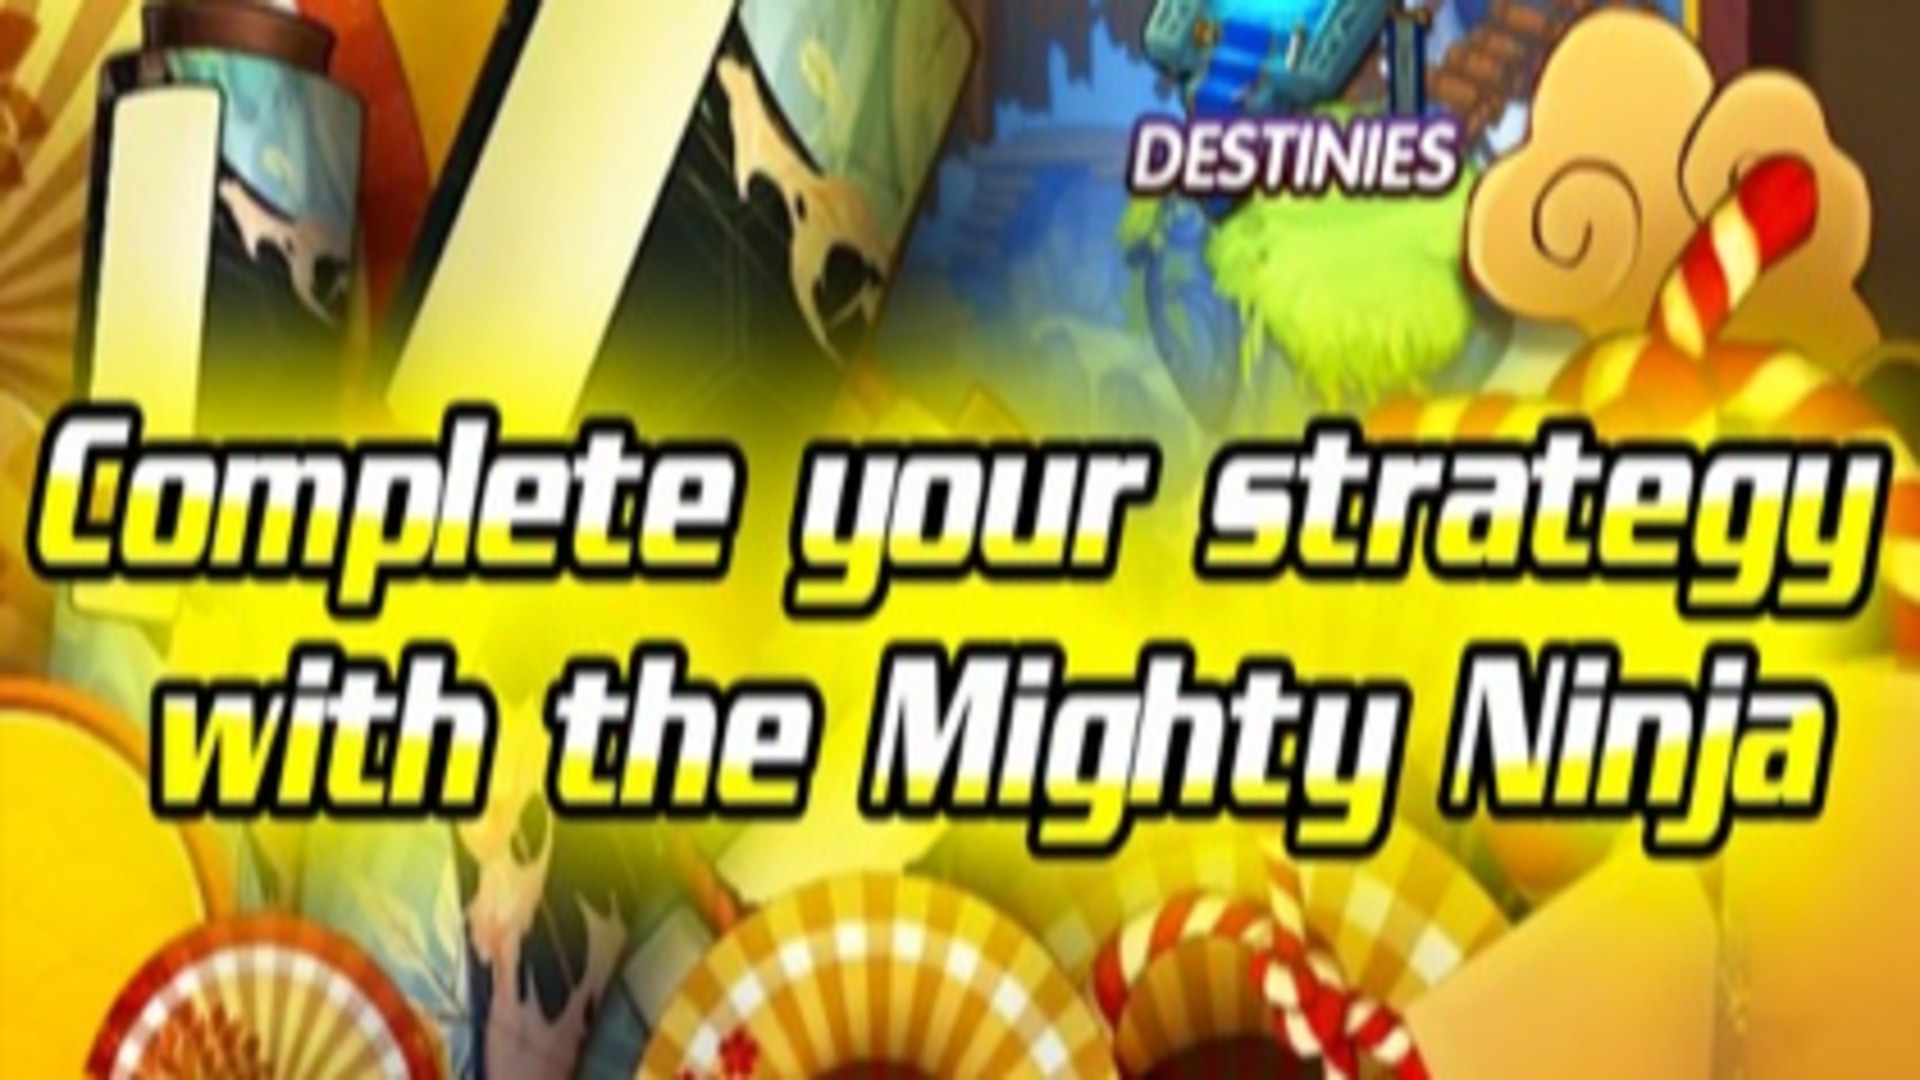 Chaos and Peace Mighty Ninja text